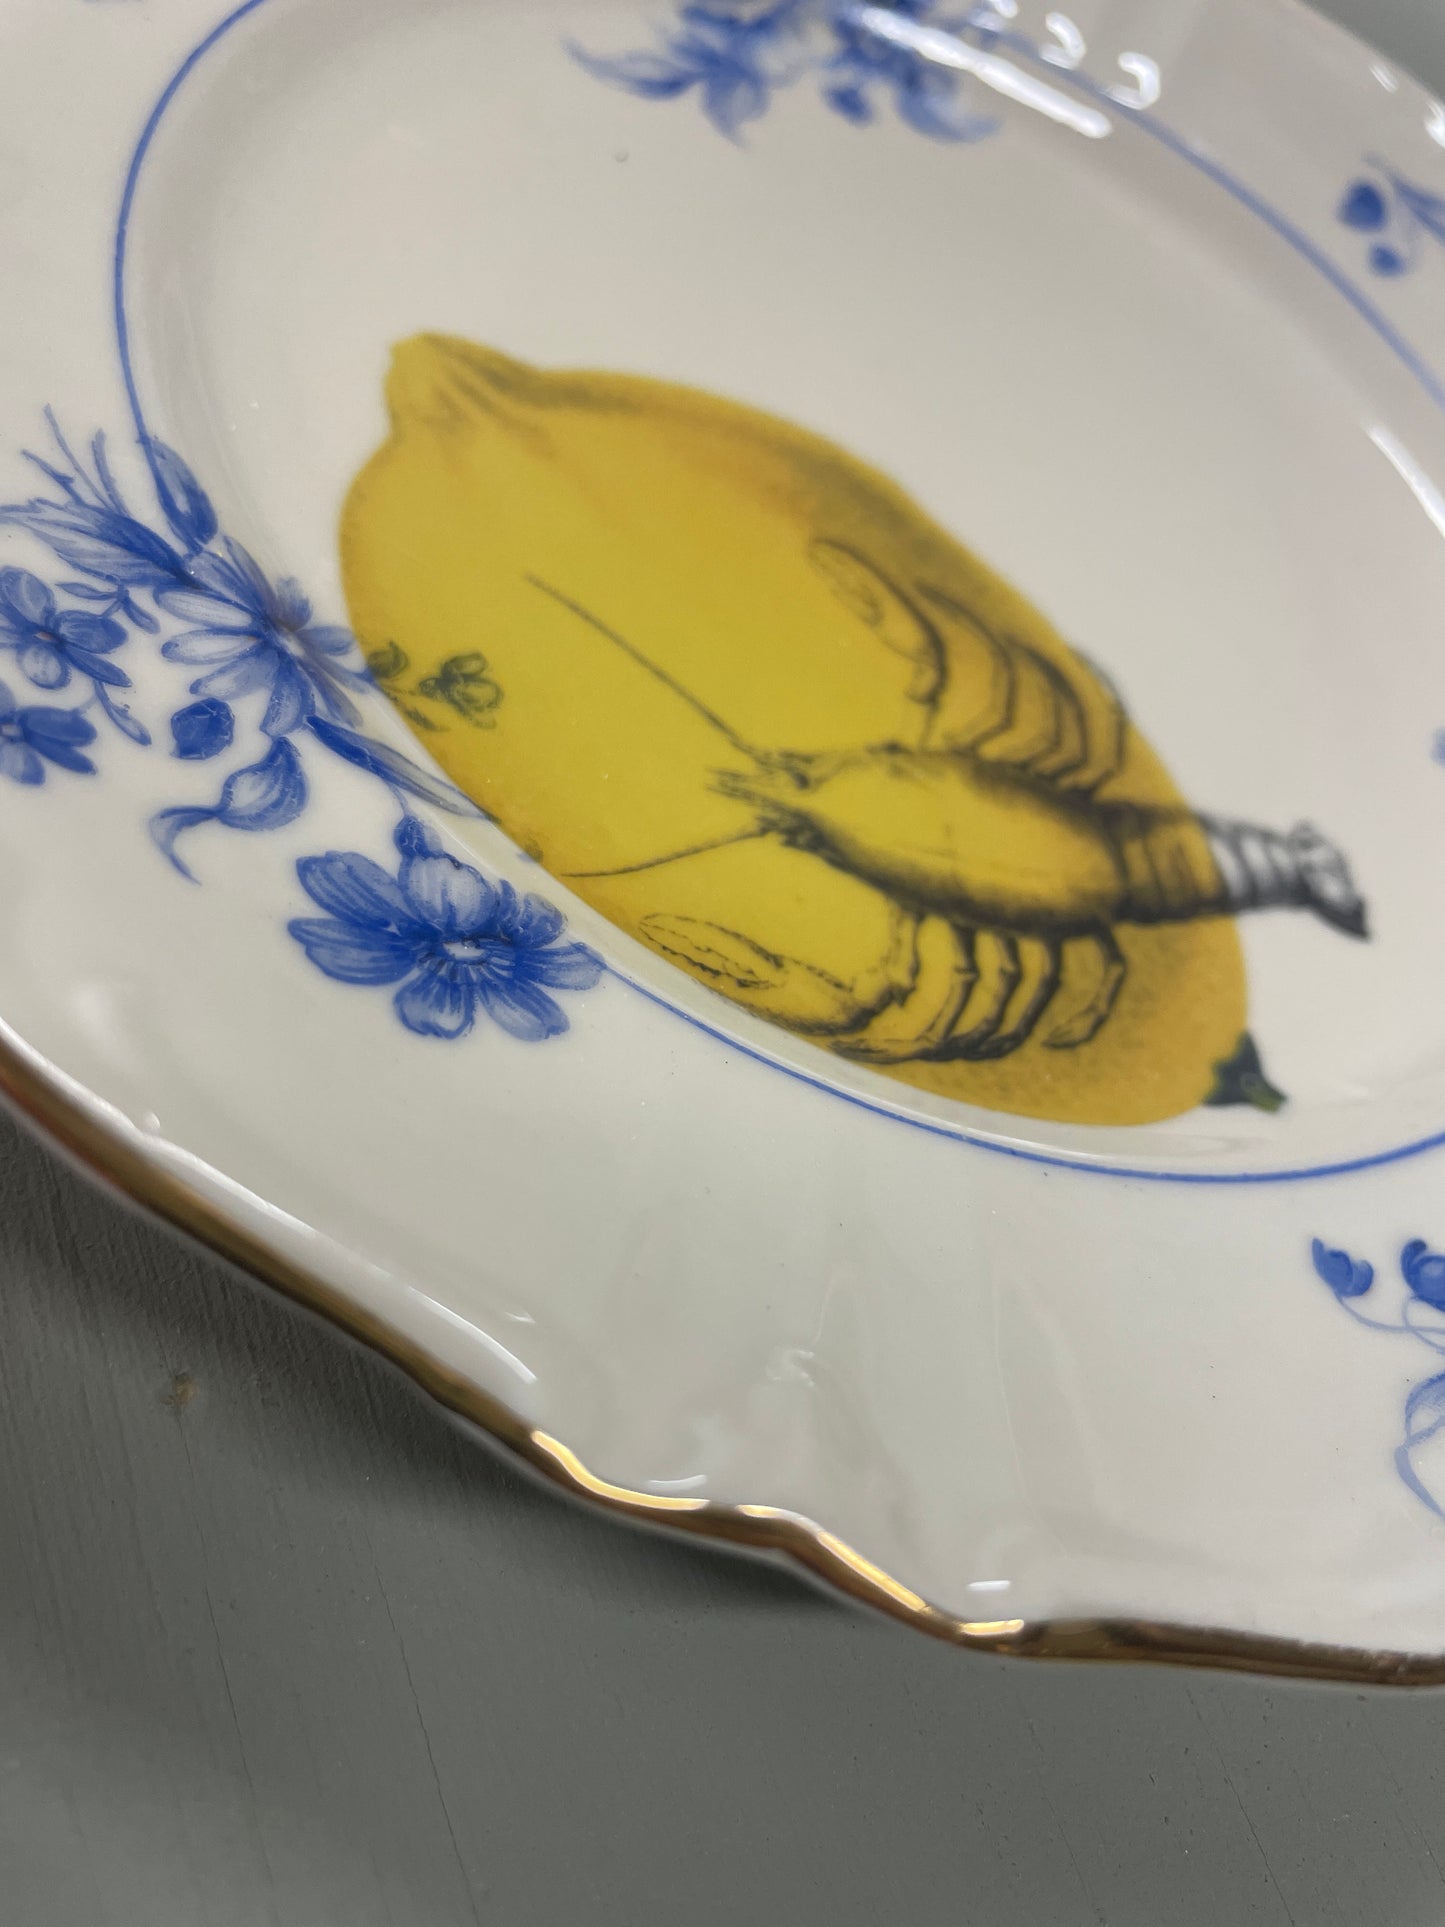 Gepimpt bord - Lobster loves lemon